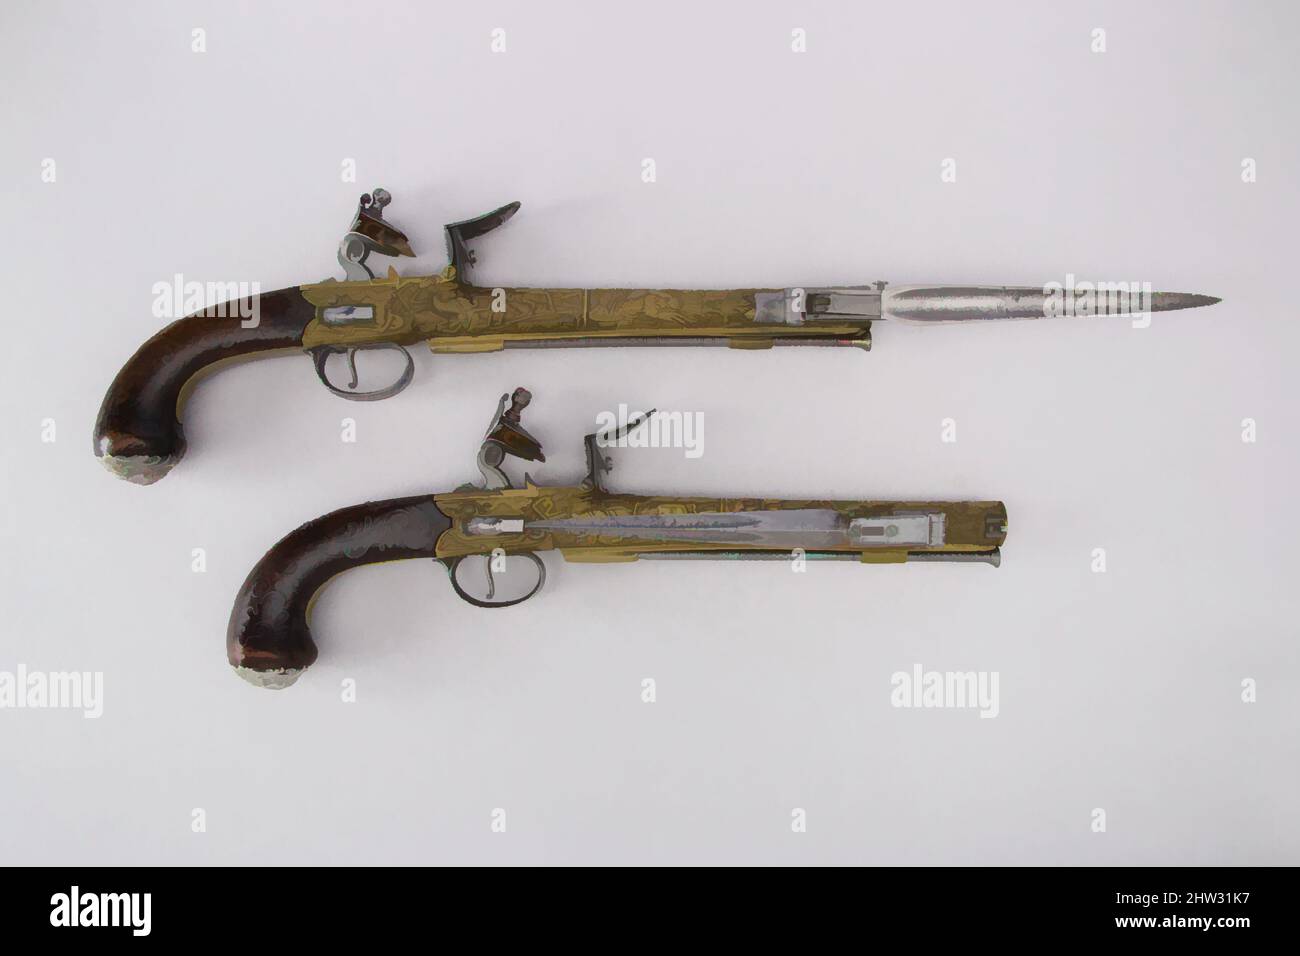 Art inspiré par une paire de pistolets à serrure à boîte Flintlock avec des baïonnettes, ca. 1782, Birmingham ; Iles Baléares, Anglais et Espagnol, acier, Bois (noyer), argent, laiton, L. 15 1/6 po. (38,3 cm) ; L. du fût 8 15/16 po. (22,7 cm) ; Cal. .64 po (17 mm) ; poids 2 lb 5 oz (1048,9 g) ; L. 14 15/16, oeuvres classiques modernisées par Artotop avec une touche de modernité. Formes, couleur et valeur, impact visuel accrocheur sur l'art émotions par la liberté d'œuvres d'art d'une manière contemporaine. Un message intemporel qui cherche une nouvelle direction créative. Artistes qui se tournent vers le support numérique et créent le NFT Artotop Banque D'Images